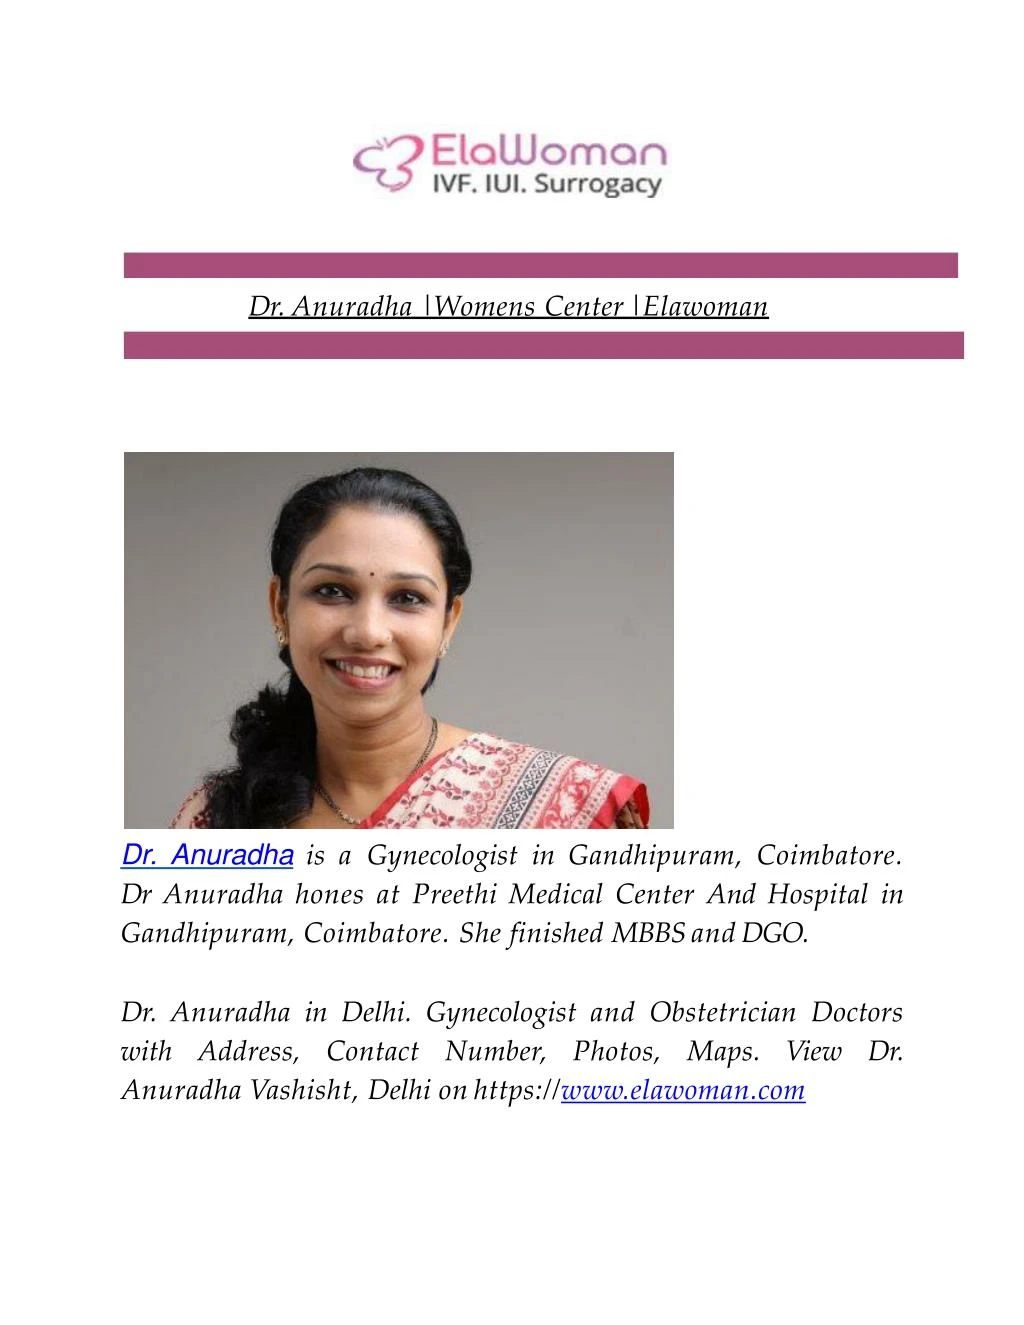 dr anuradha womens center elawoman